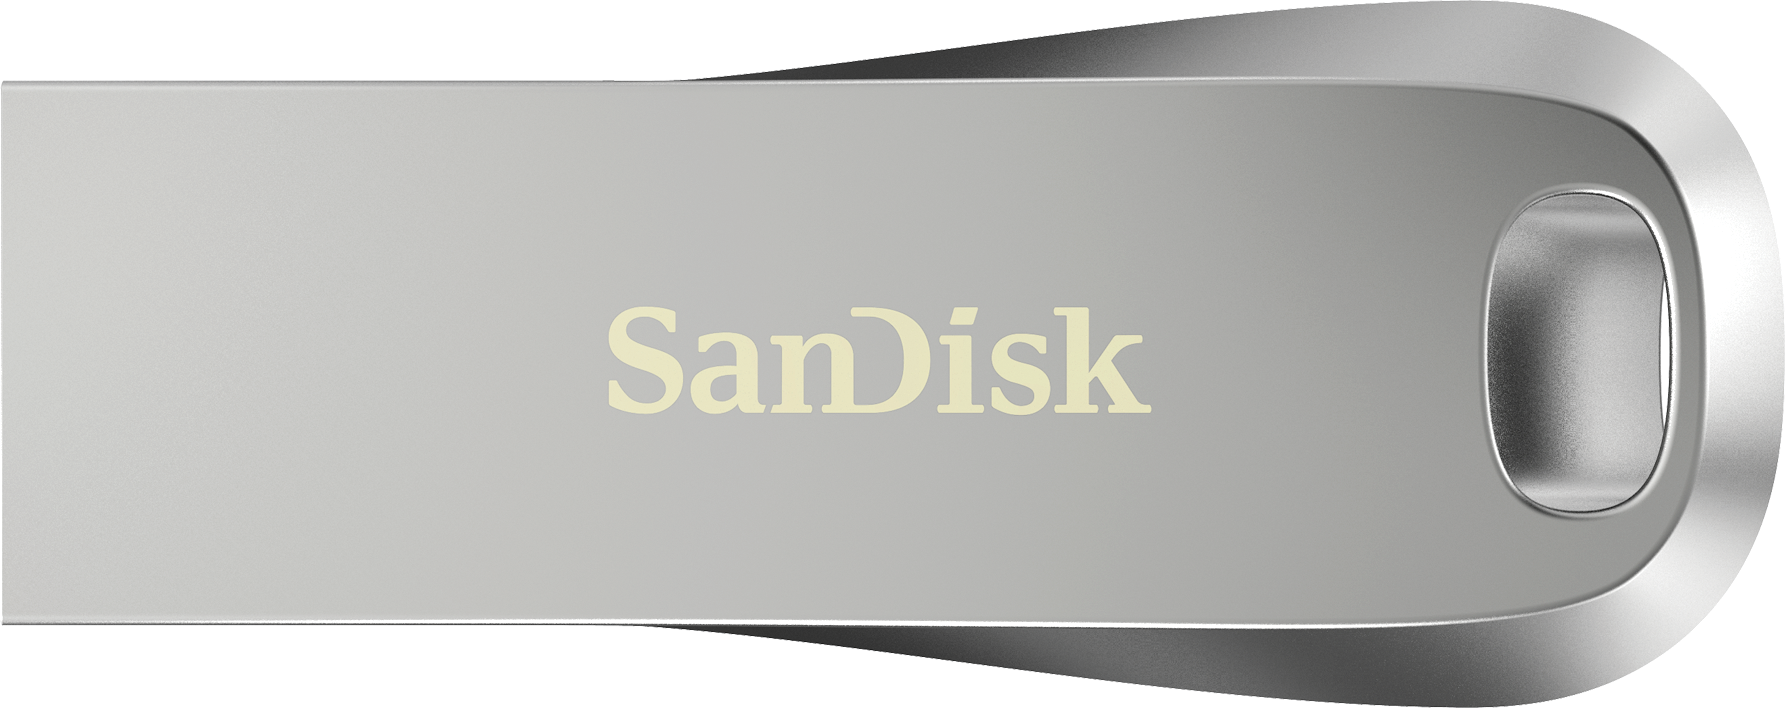 sandisk secure access v3